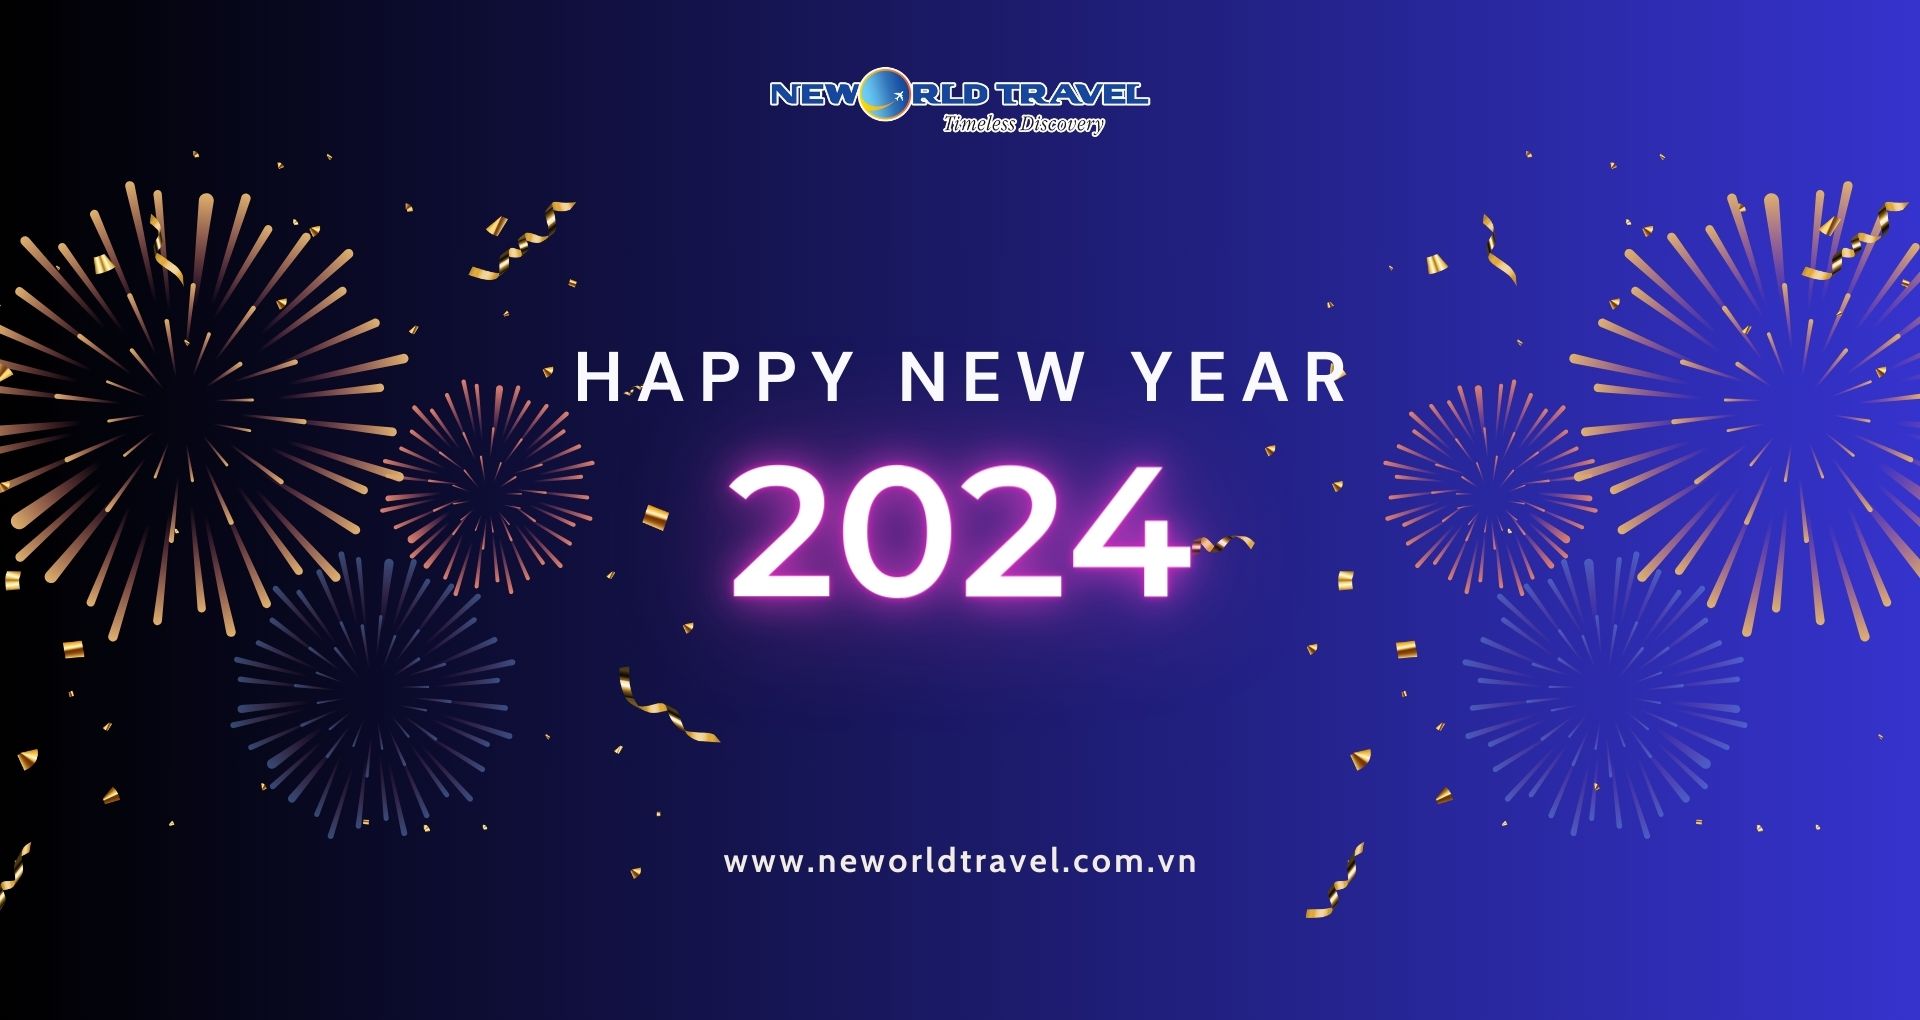 [ Du lịch Tân Thế Giới - New World Travel ] Chúc mừng năm mới và thông báo lịch nghỉ Tết dương lịch 2024